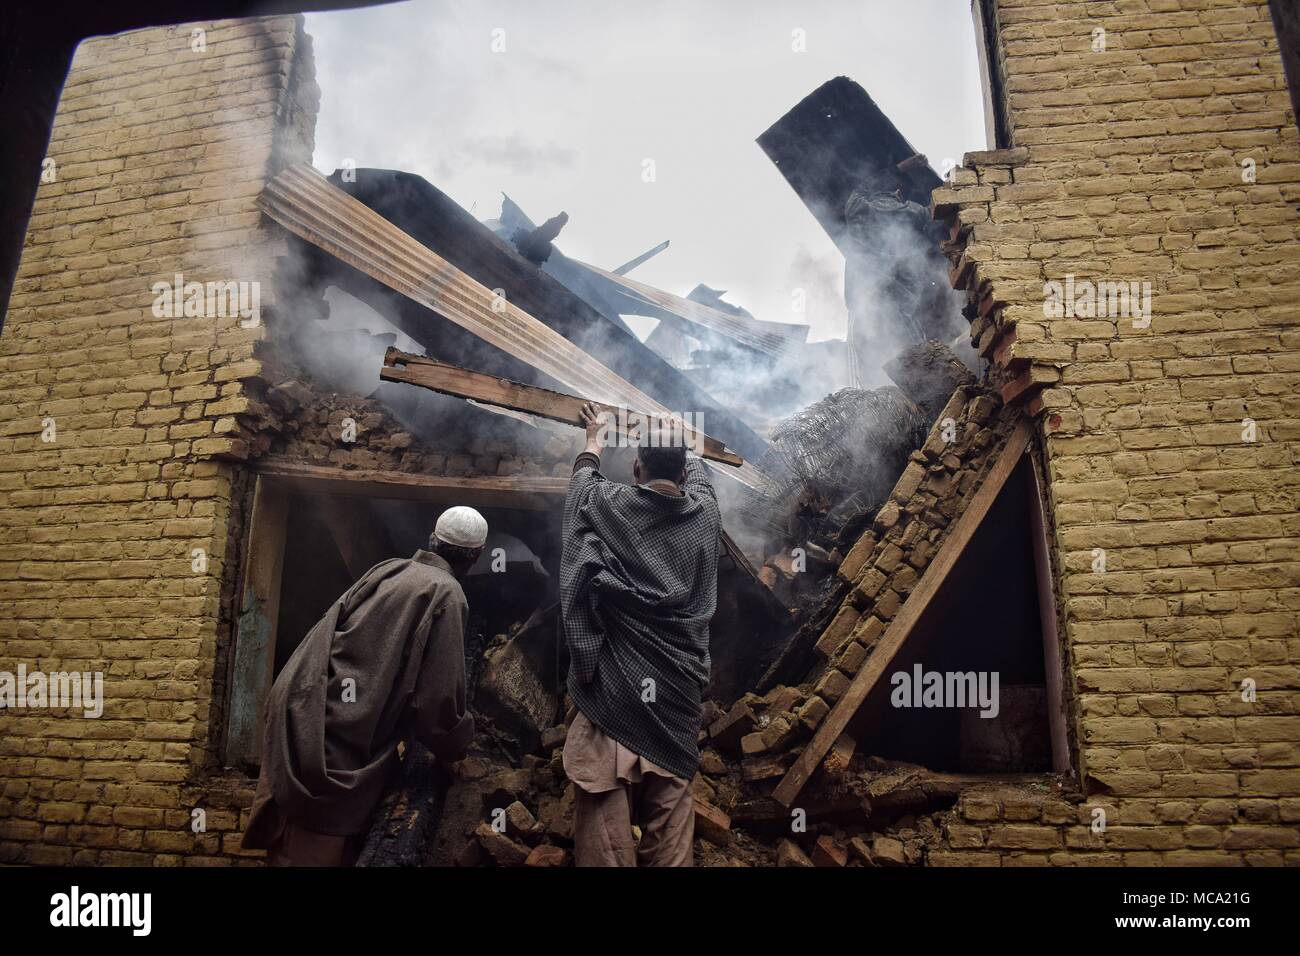 Los lugareños borrado quemando cosas de casas que fueron destruidas por las fuerzas indias en una zona Khudwani Gunbattle al sur del distrito de Cachemira Kulgam el 11 de abril de 2018. Cuatro civiles y 1 hombre del ejército fueron muertos y cerca de 150 civiles fueron heridos en enfrentamientos durante el encuentro Foto de stock